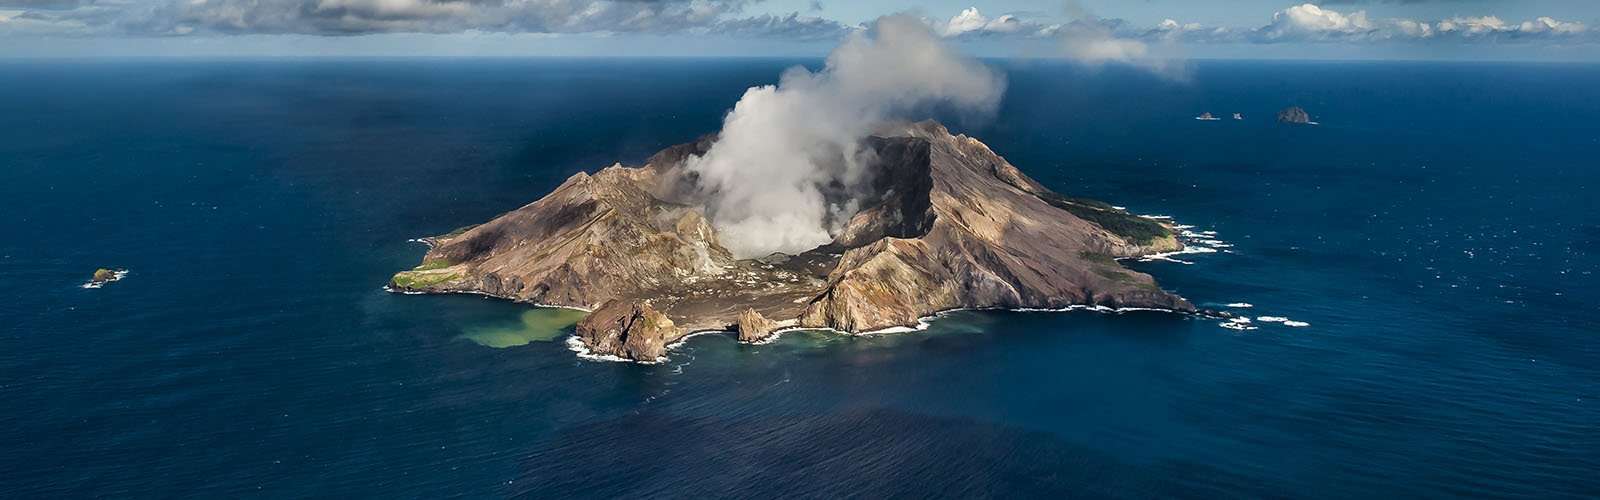 Νέα Ζηλανδία: Τουλάχιστον ένας νεκρός από την έκρηξη ηφαιστείου, πολλοί αγνοούμενοι